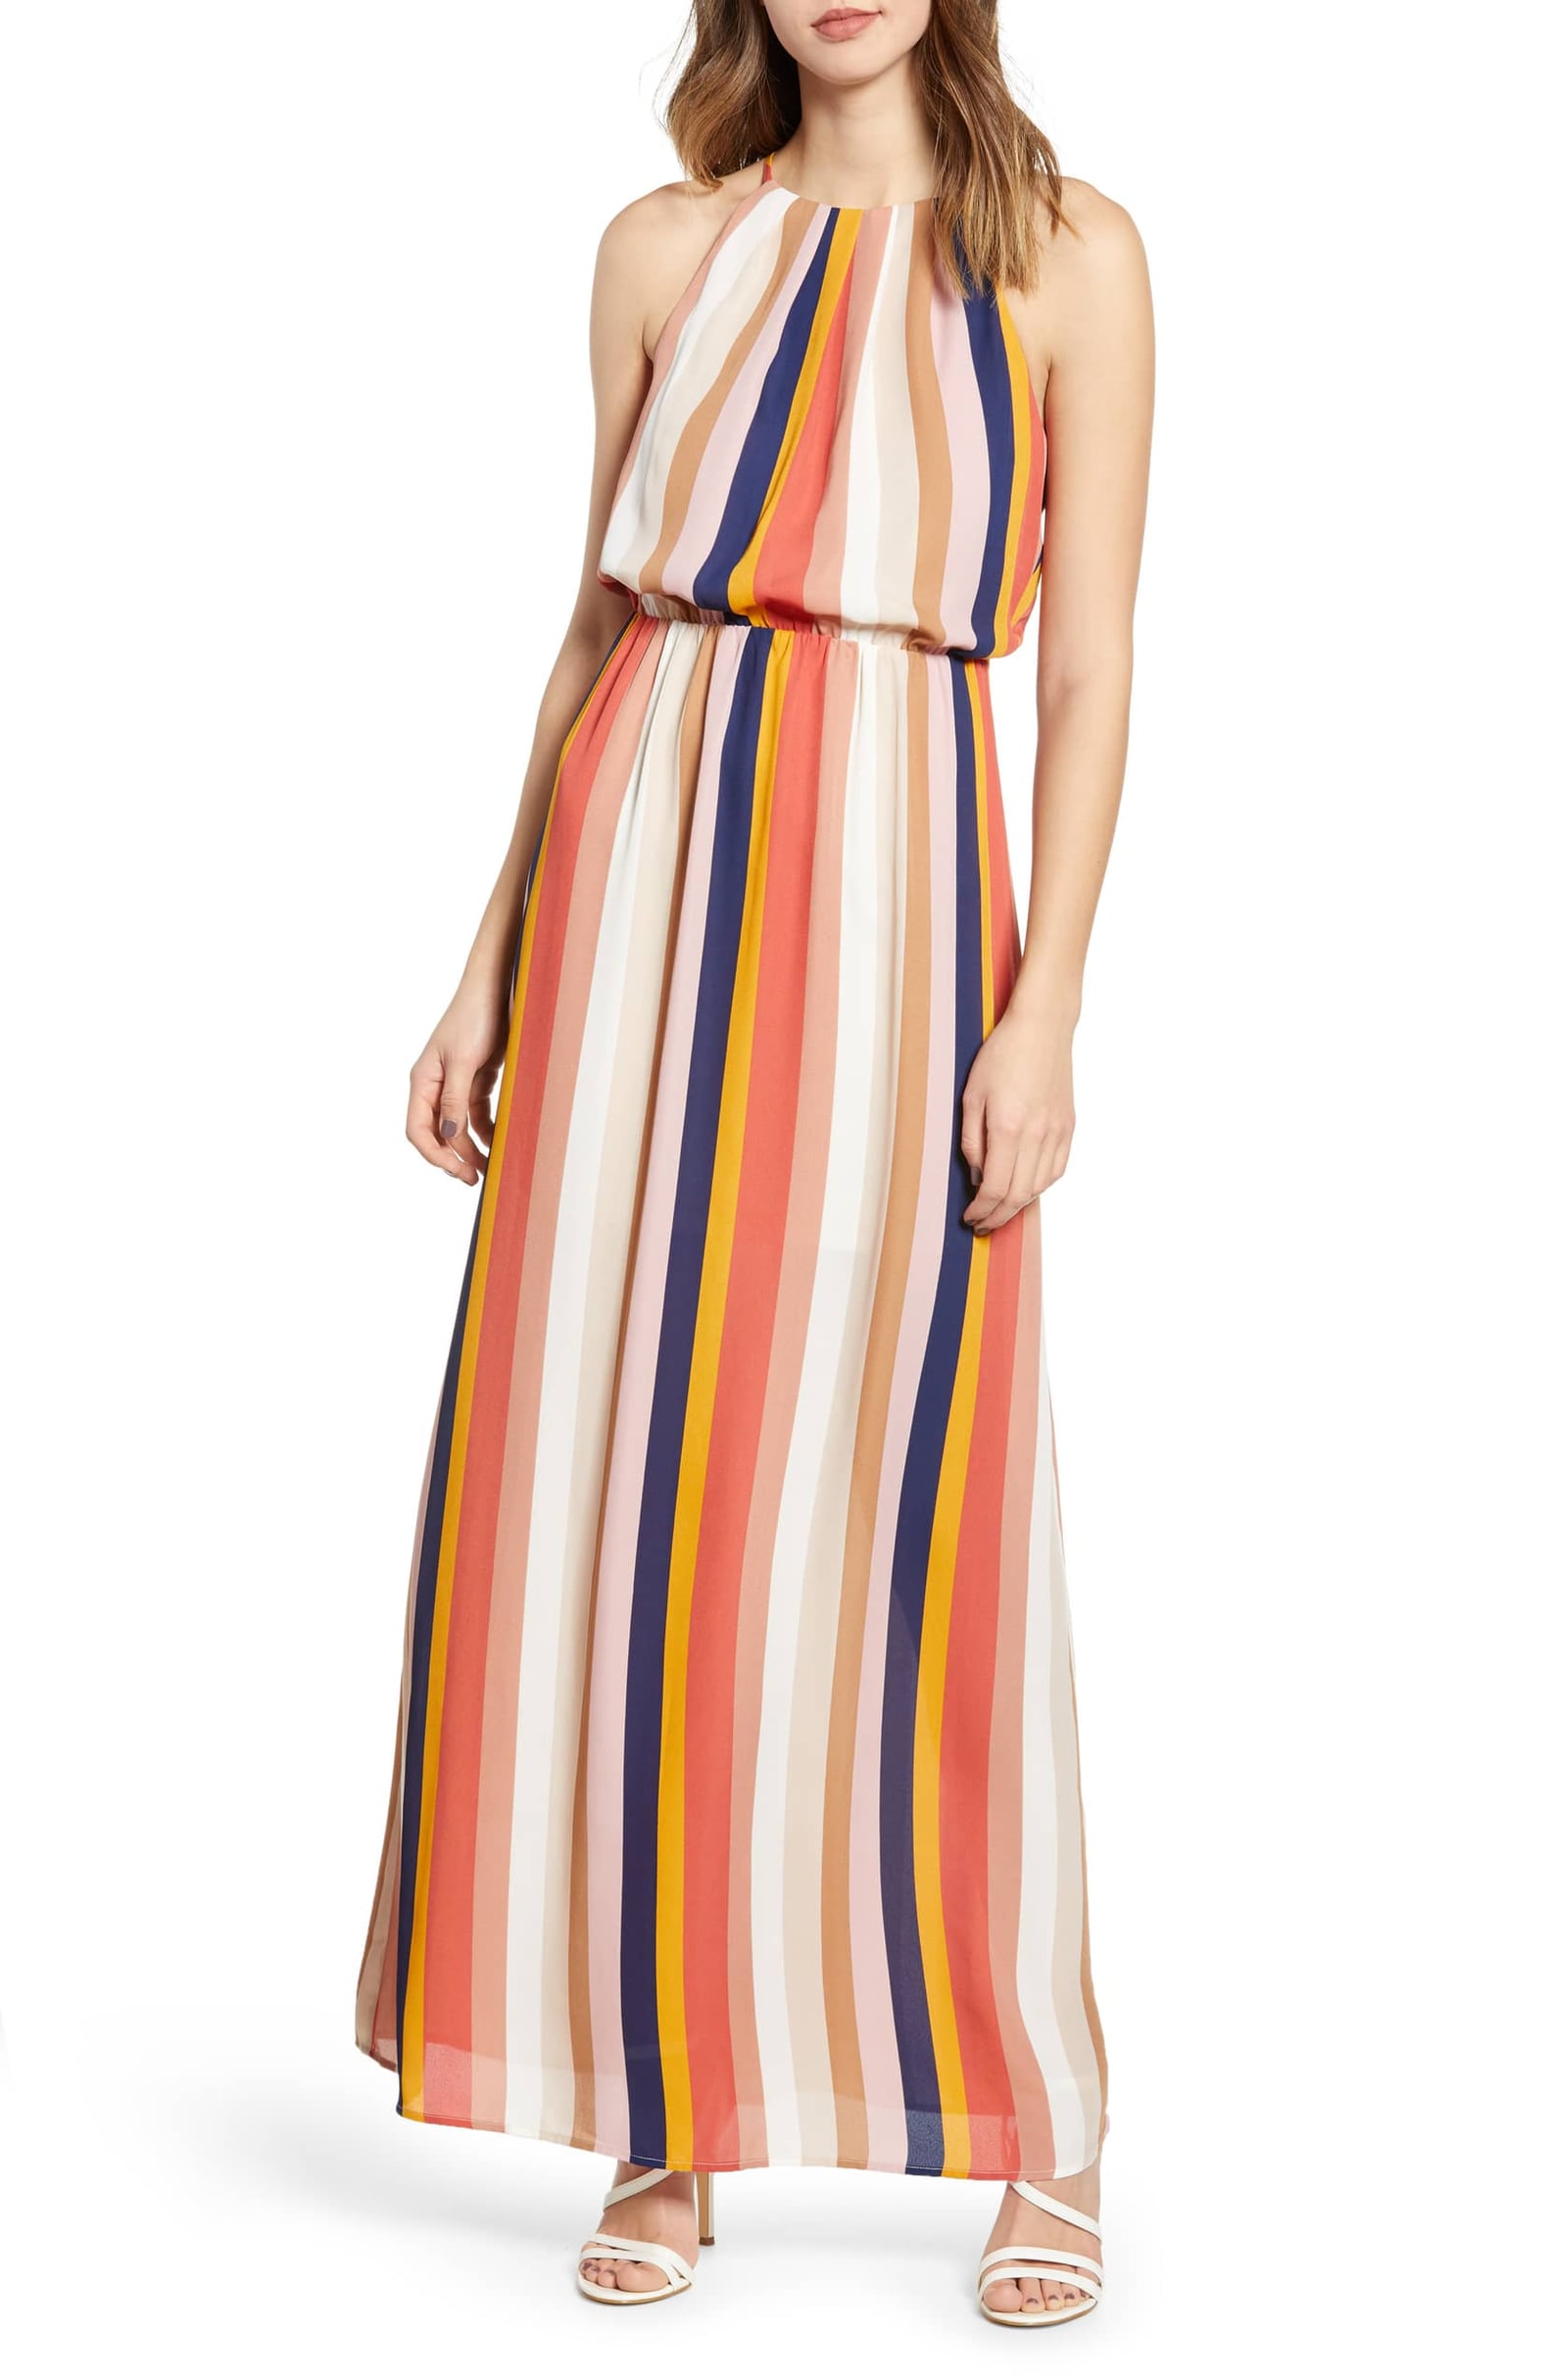 Summer Dresses on Sale at Nordstrom 2019 | POPSUGAR Fashion